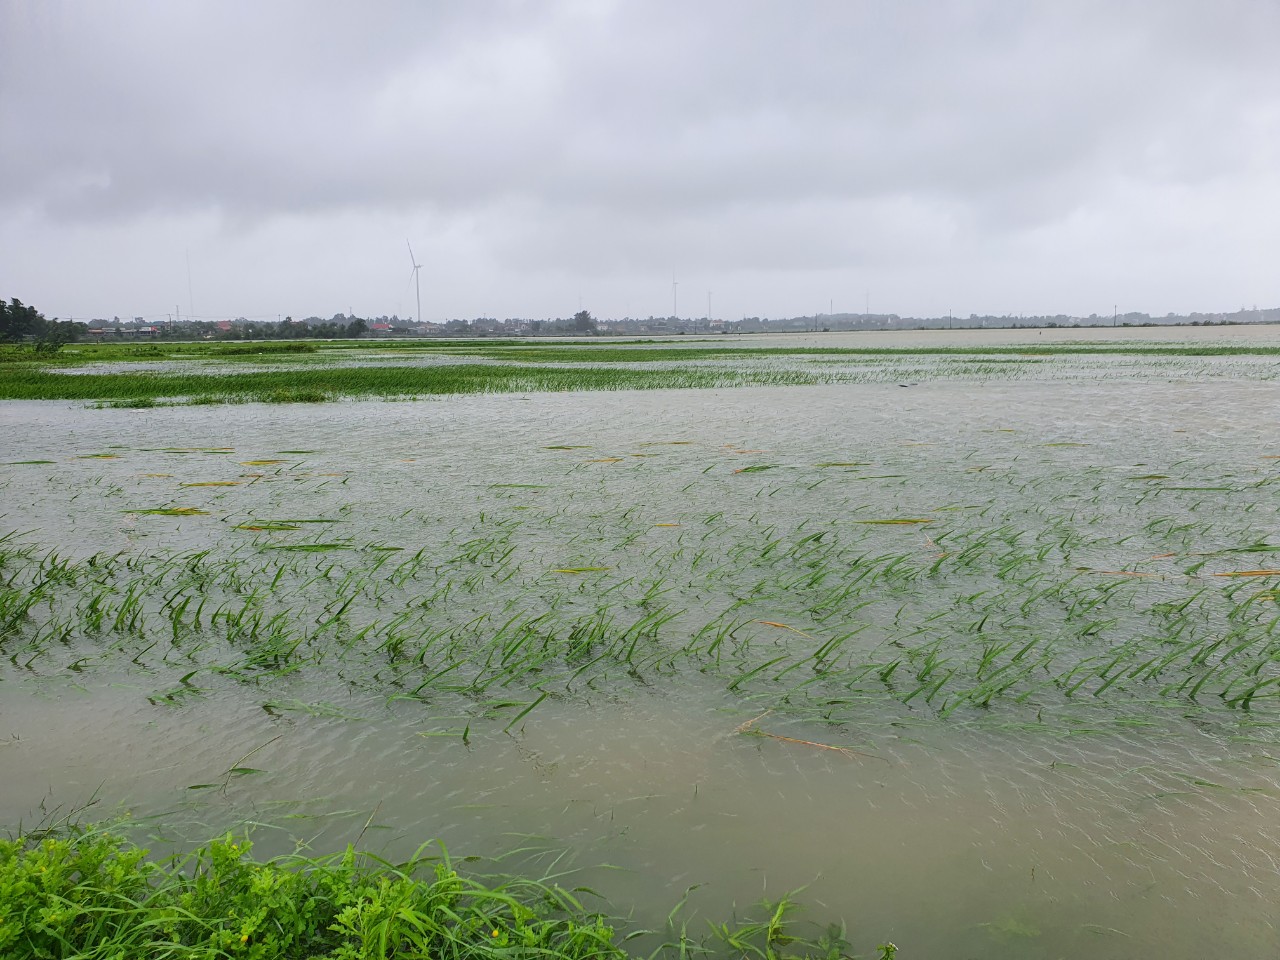  Mưa lớn, hàng ngàn ha lúa ở Lệ Thủy chìm trong biển nước, nguy cơ mất trắng.